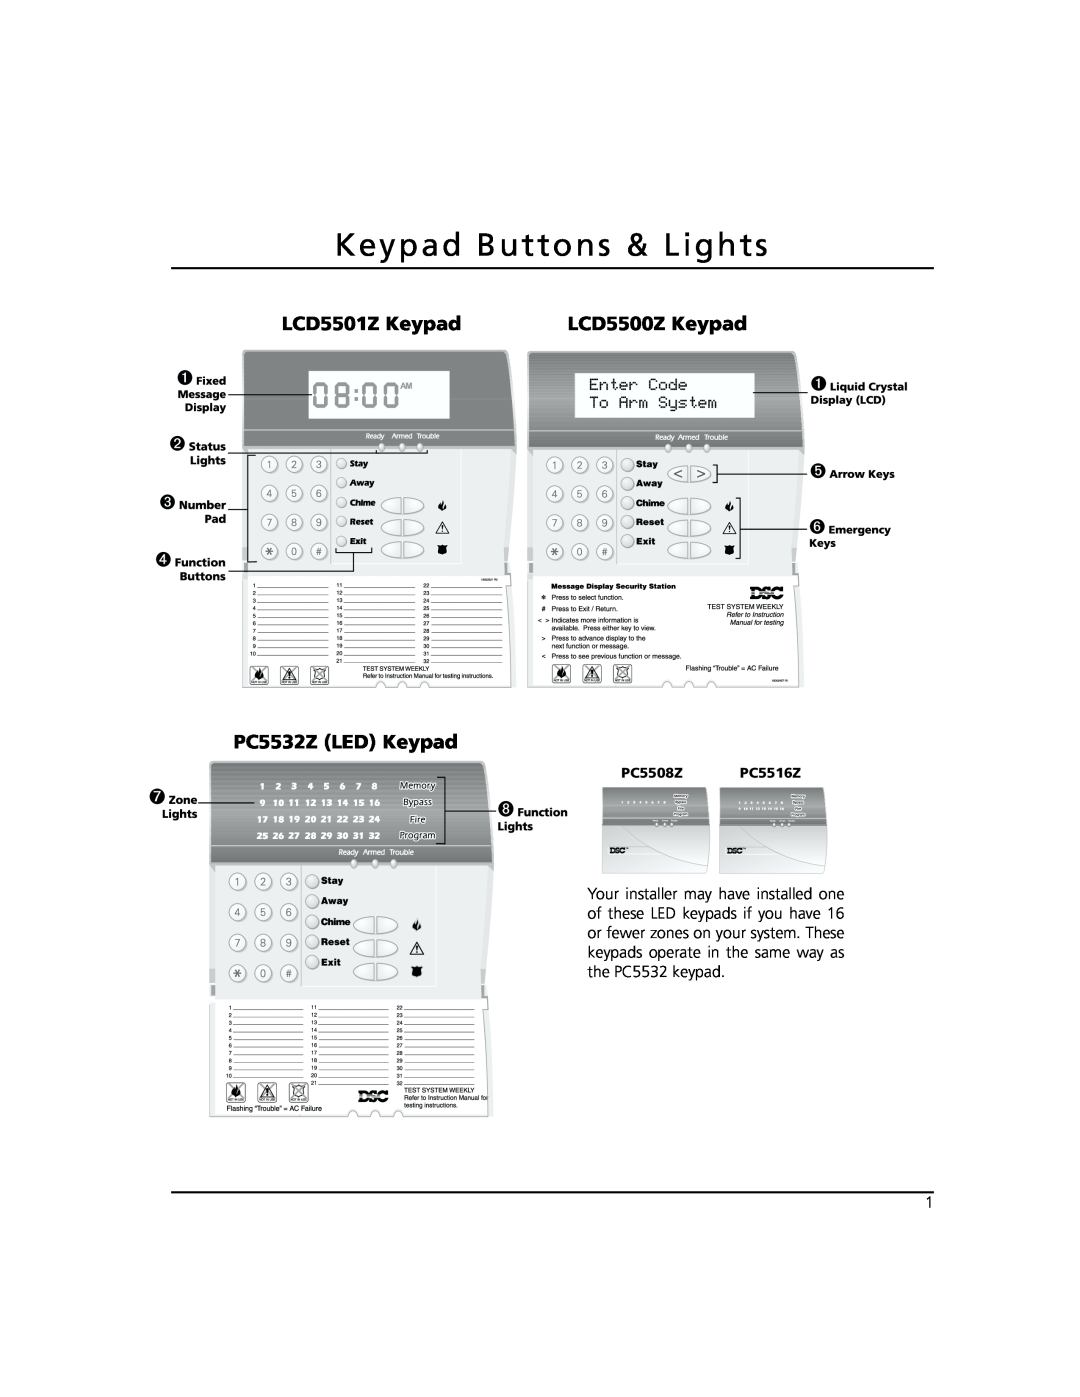 ADT Security Services Power 864 manual Keypad Buttons & Lights, LCD5501Z Keypad PC5532Z LED Keypad, LCD5500Z Keypad 